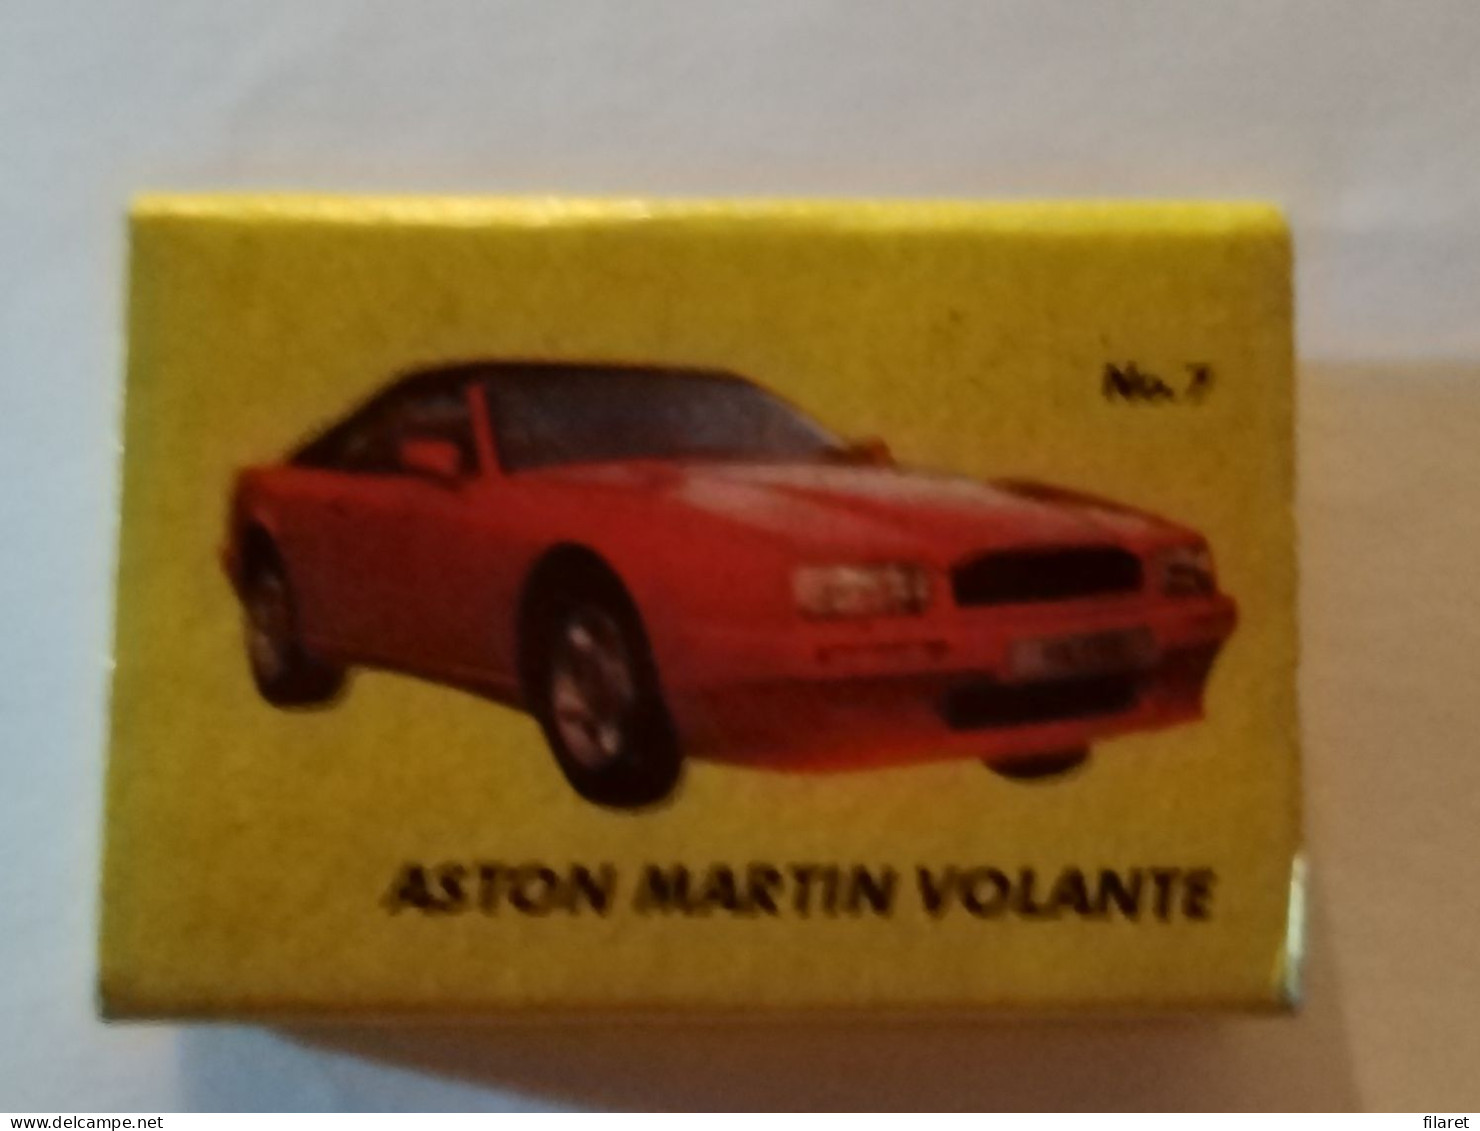 Aston Martin Volante, Car/automobile,MALAZLAR FACTORY,Turcia,matchbox - Zündholzschachteln